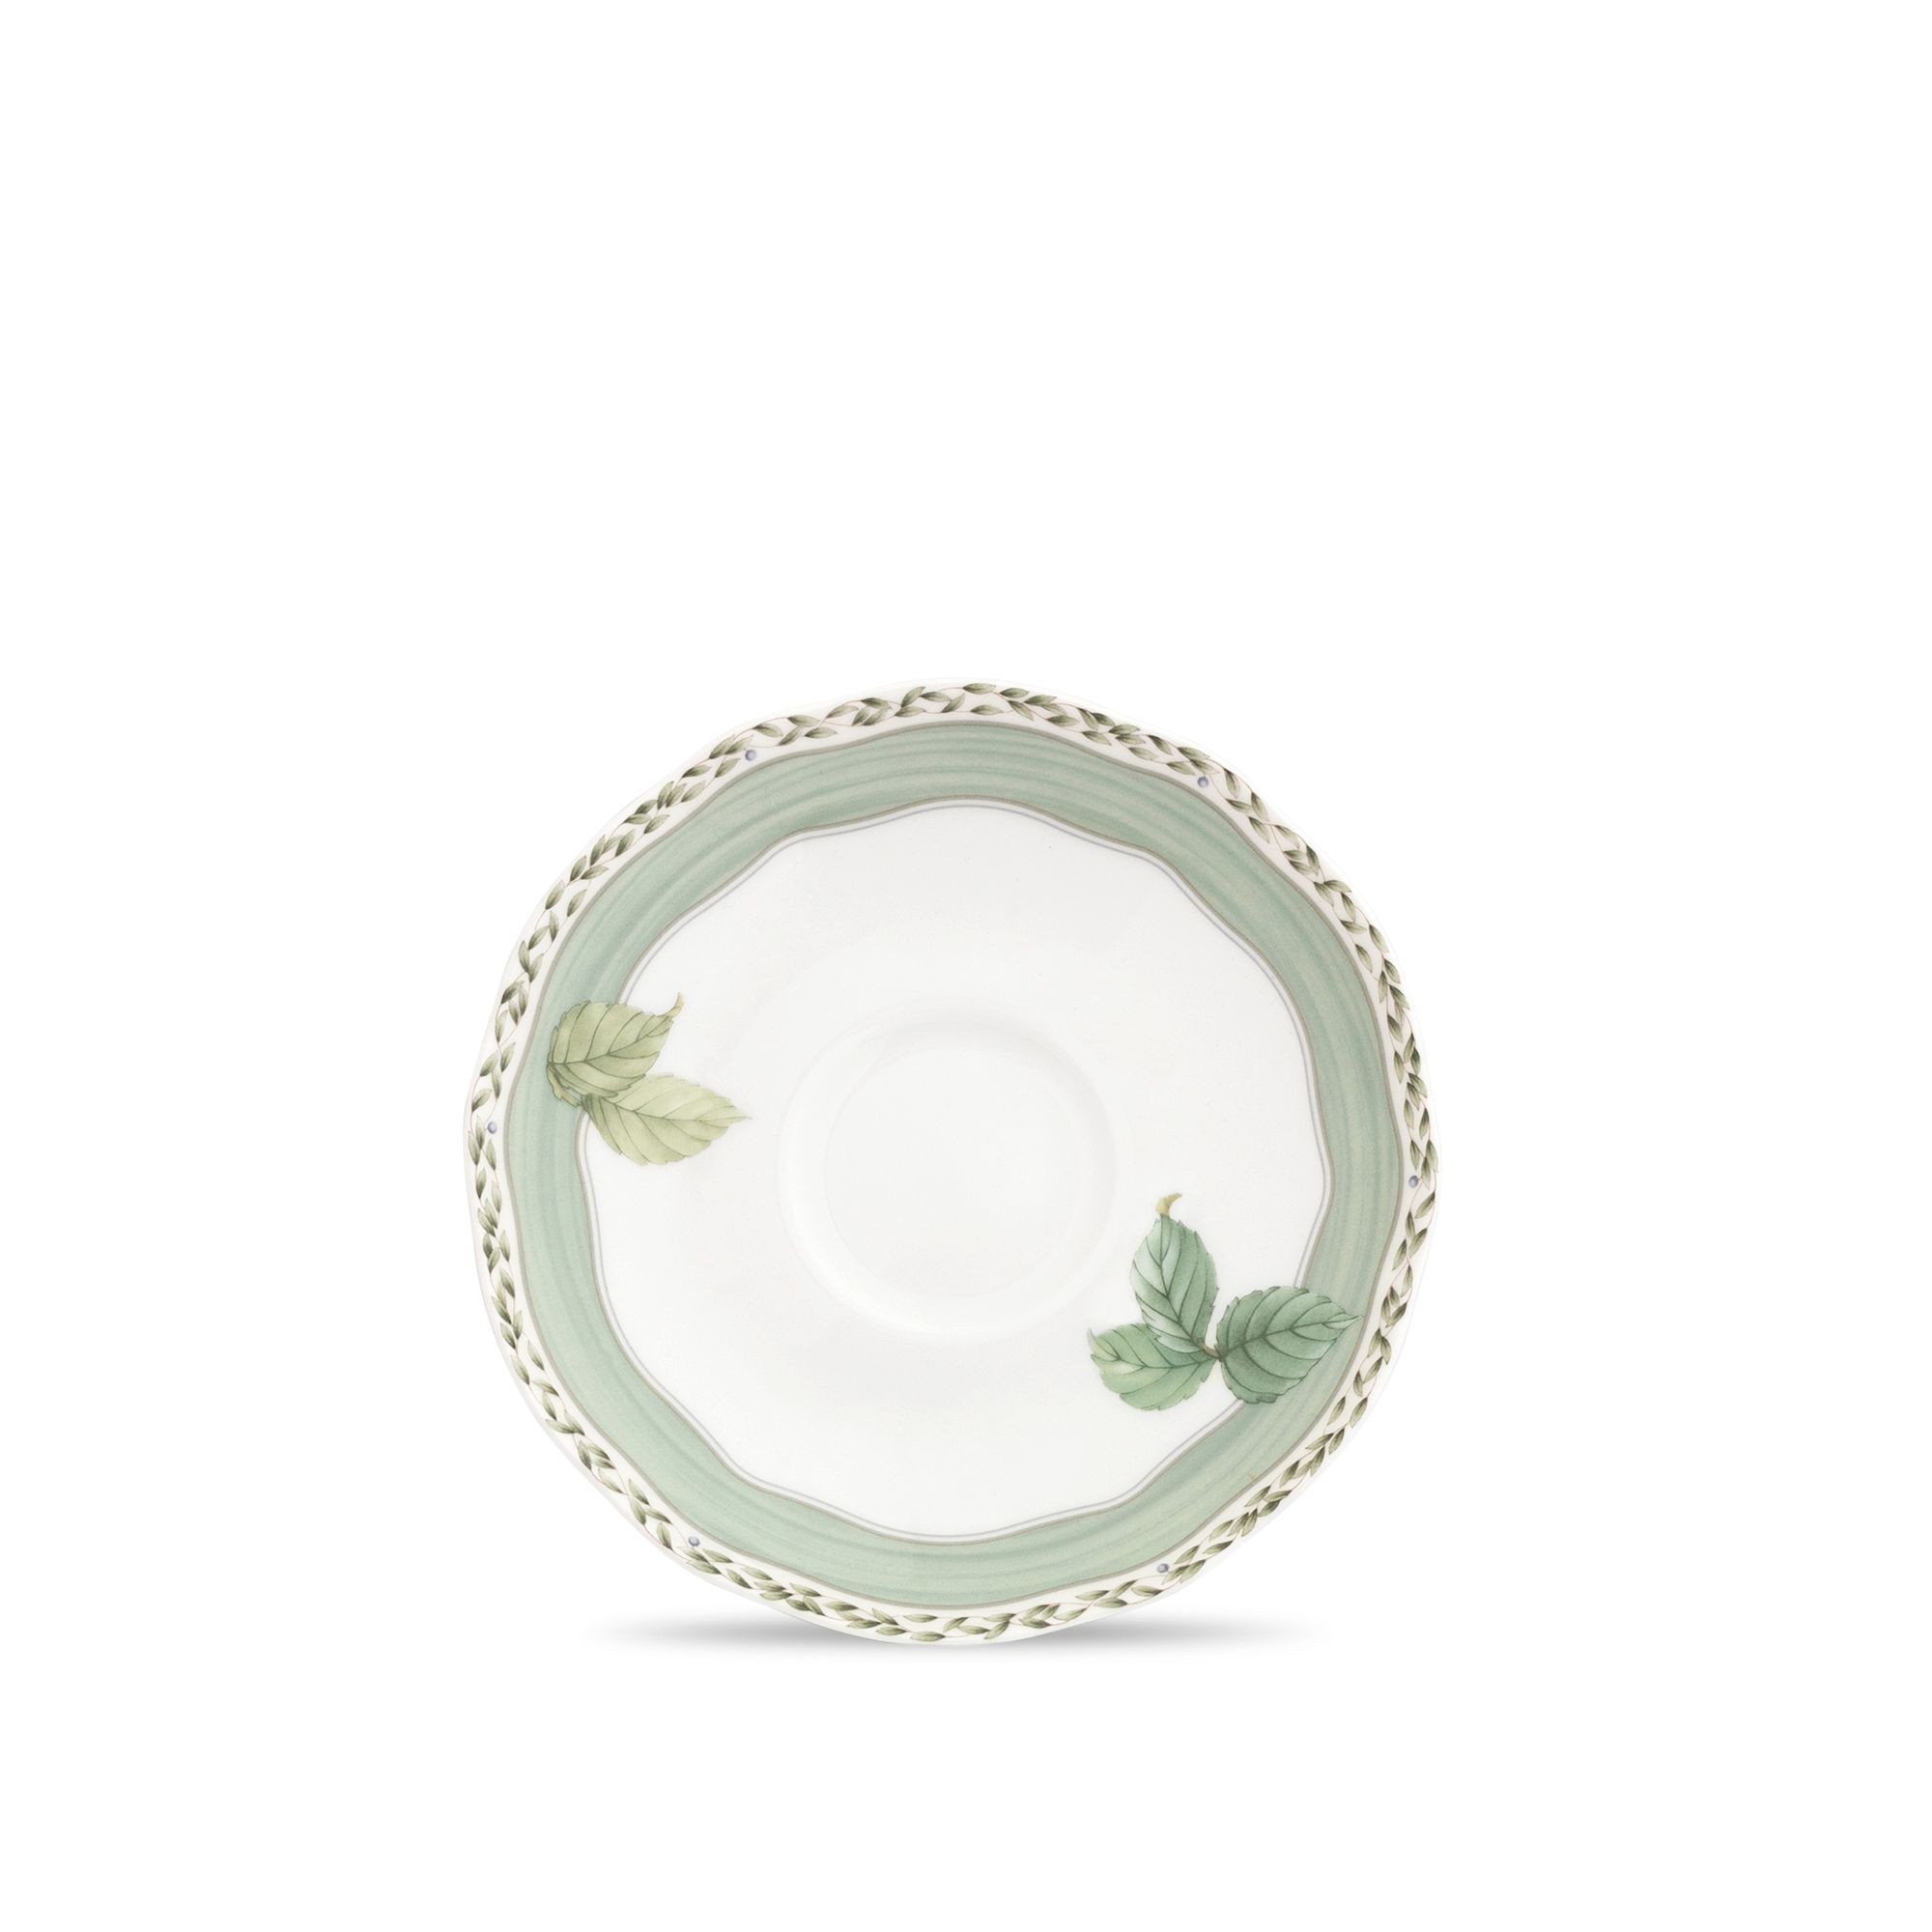  Đĩa lót chén trà (tách trà) màu xanh 153mm  | Orchard Garden 4911-1L-97889S 